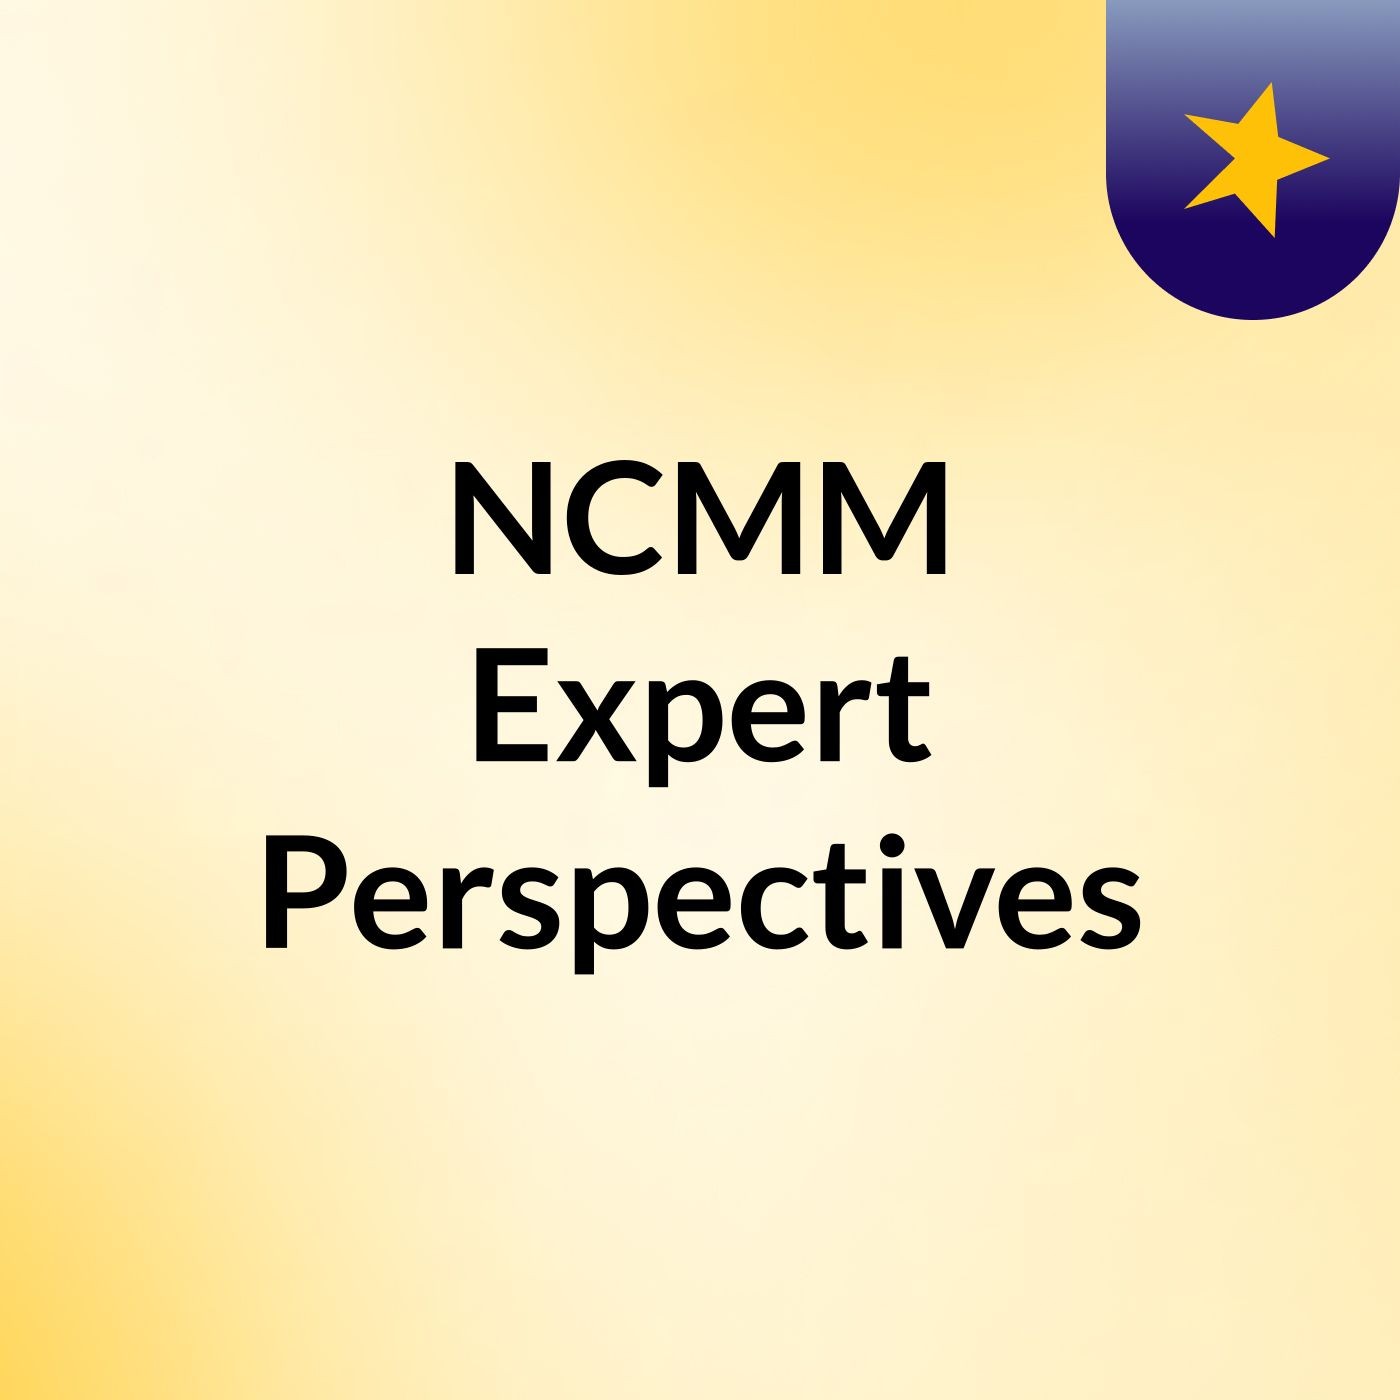 NCMM Expert Perspectives